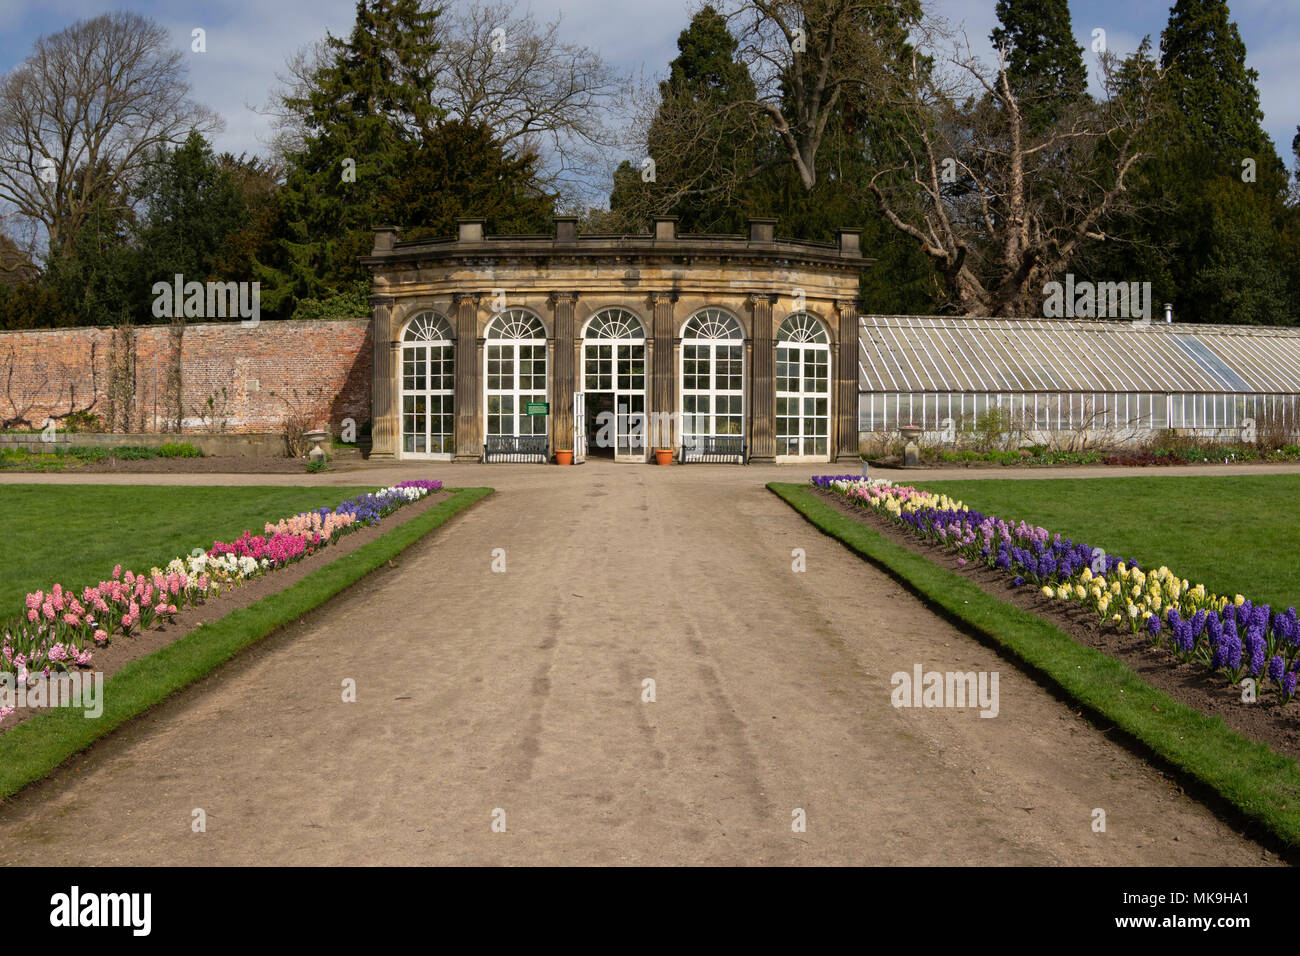 Jardins clos et maison tropicale au château de Ripley, Harrogate, North Yorkshire, Angleterre, Royaume-Uni. Banque D'Images